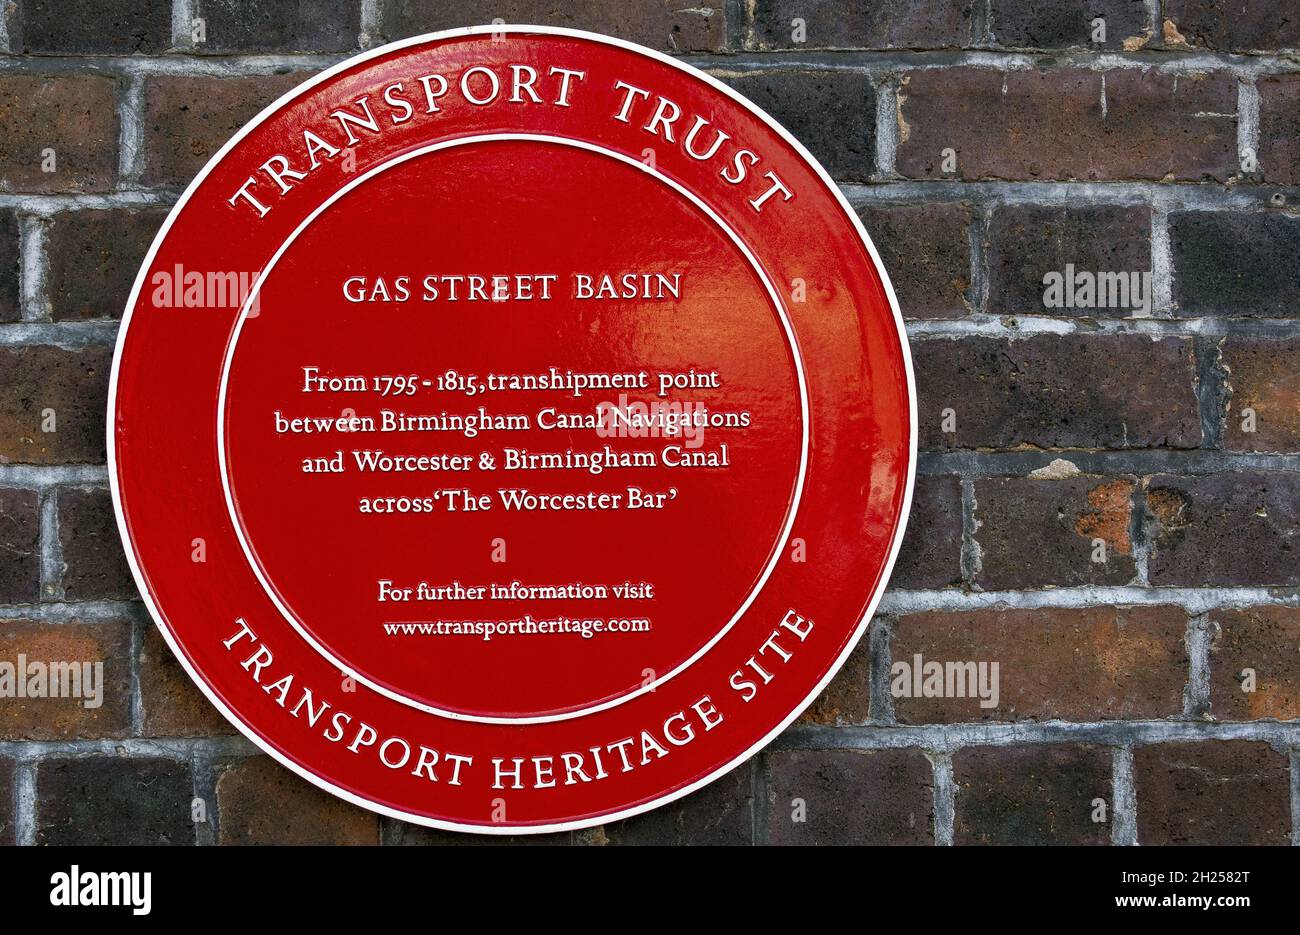 Transport Heritage site par le transport Trust pour Gas Street Basin à Regency Wharf, Birmingham, West Midlands, Angleterre, Royaume-Uni Banque D'Images